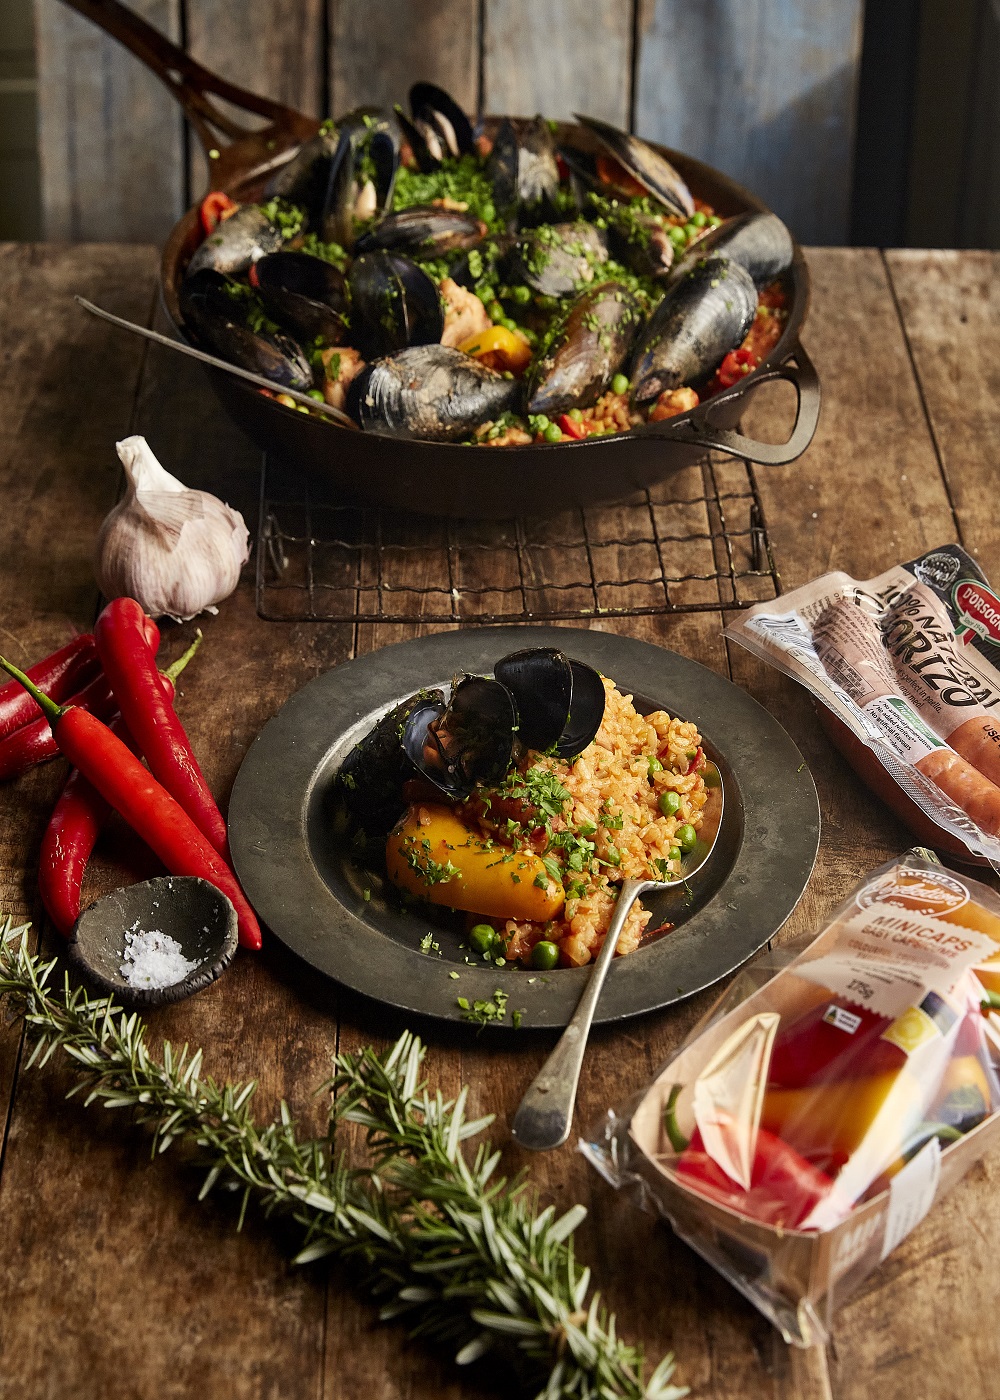 Paella (Chorizo And Mussel Paella)(The Australian “Spanish Paella “)